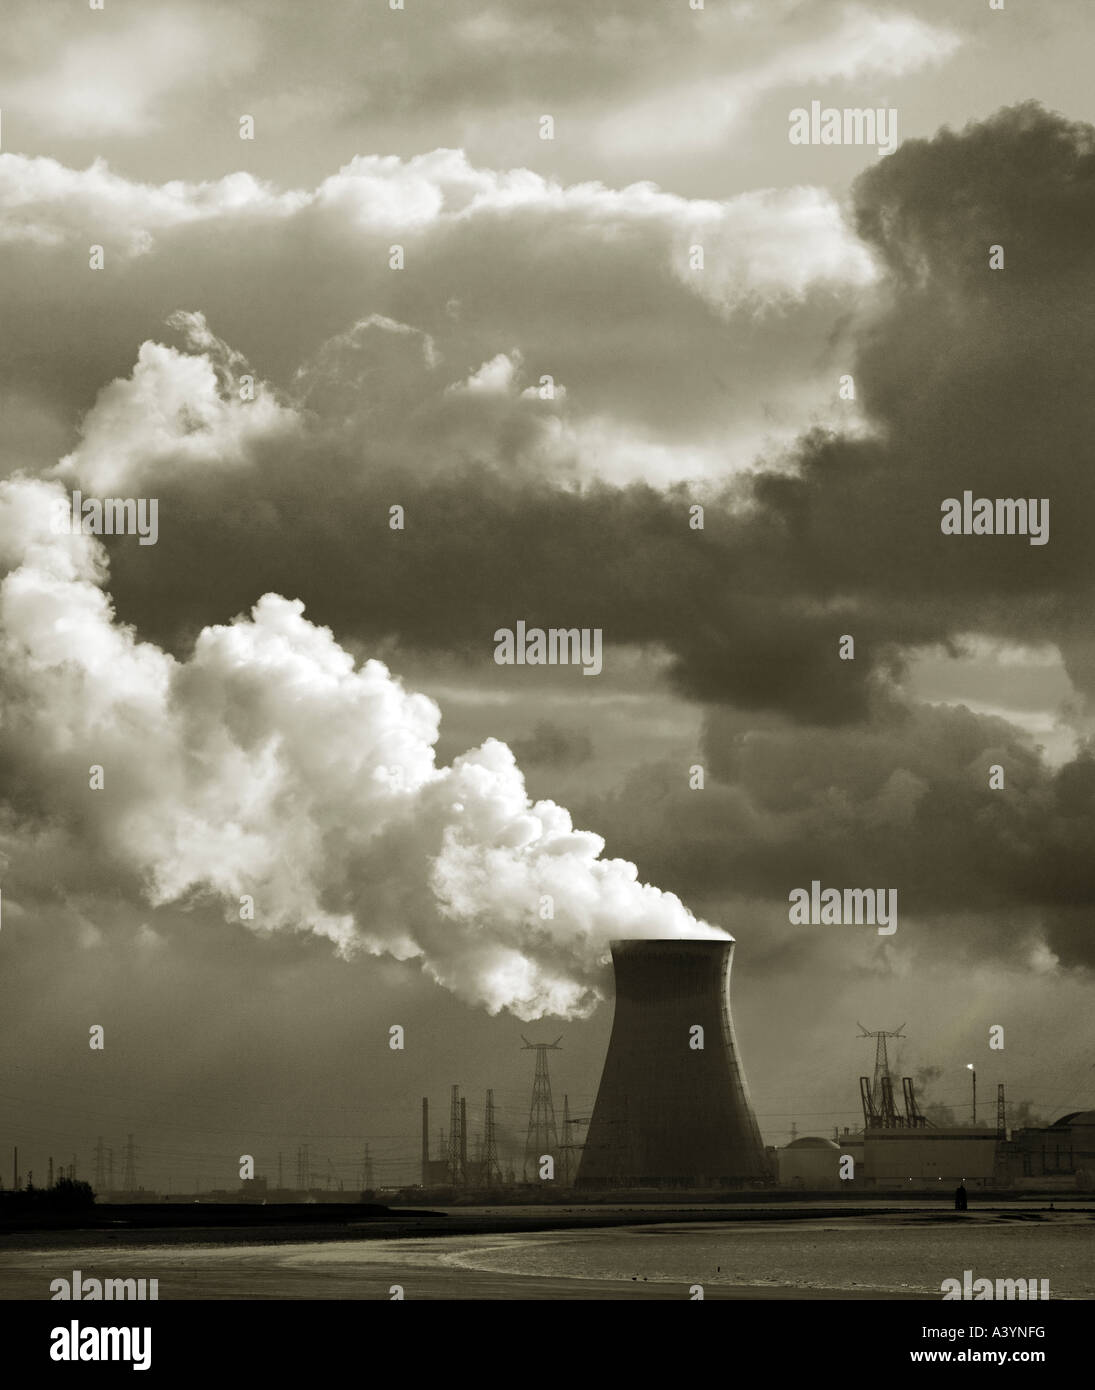 Centrale nucléaire de Doel en Belgique. L'ensemble de l'estuaire de l'Escaut Rivière. Anvers au loin. Ciel dramatique avec la vapeur. Banque D'Images